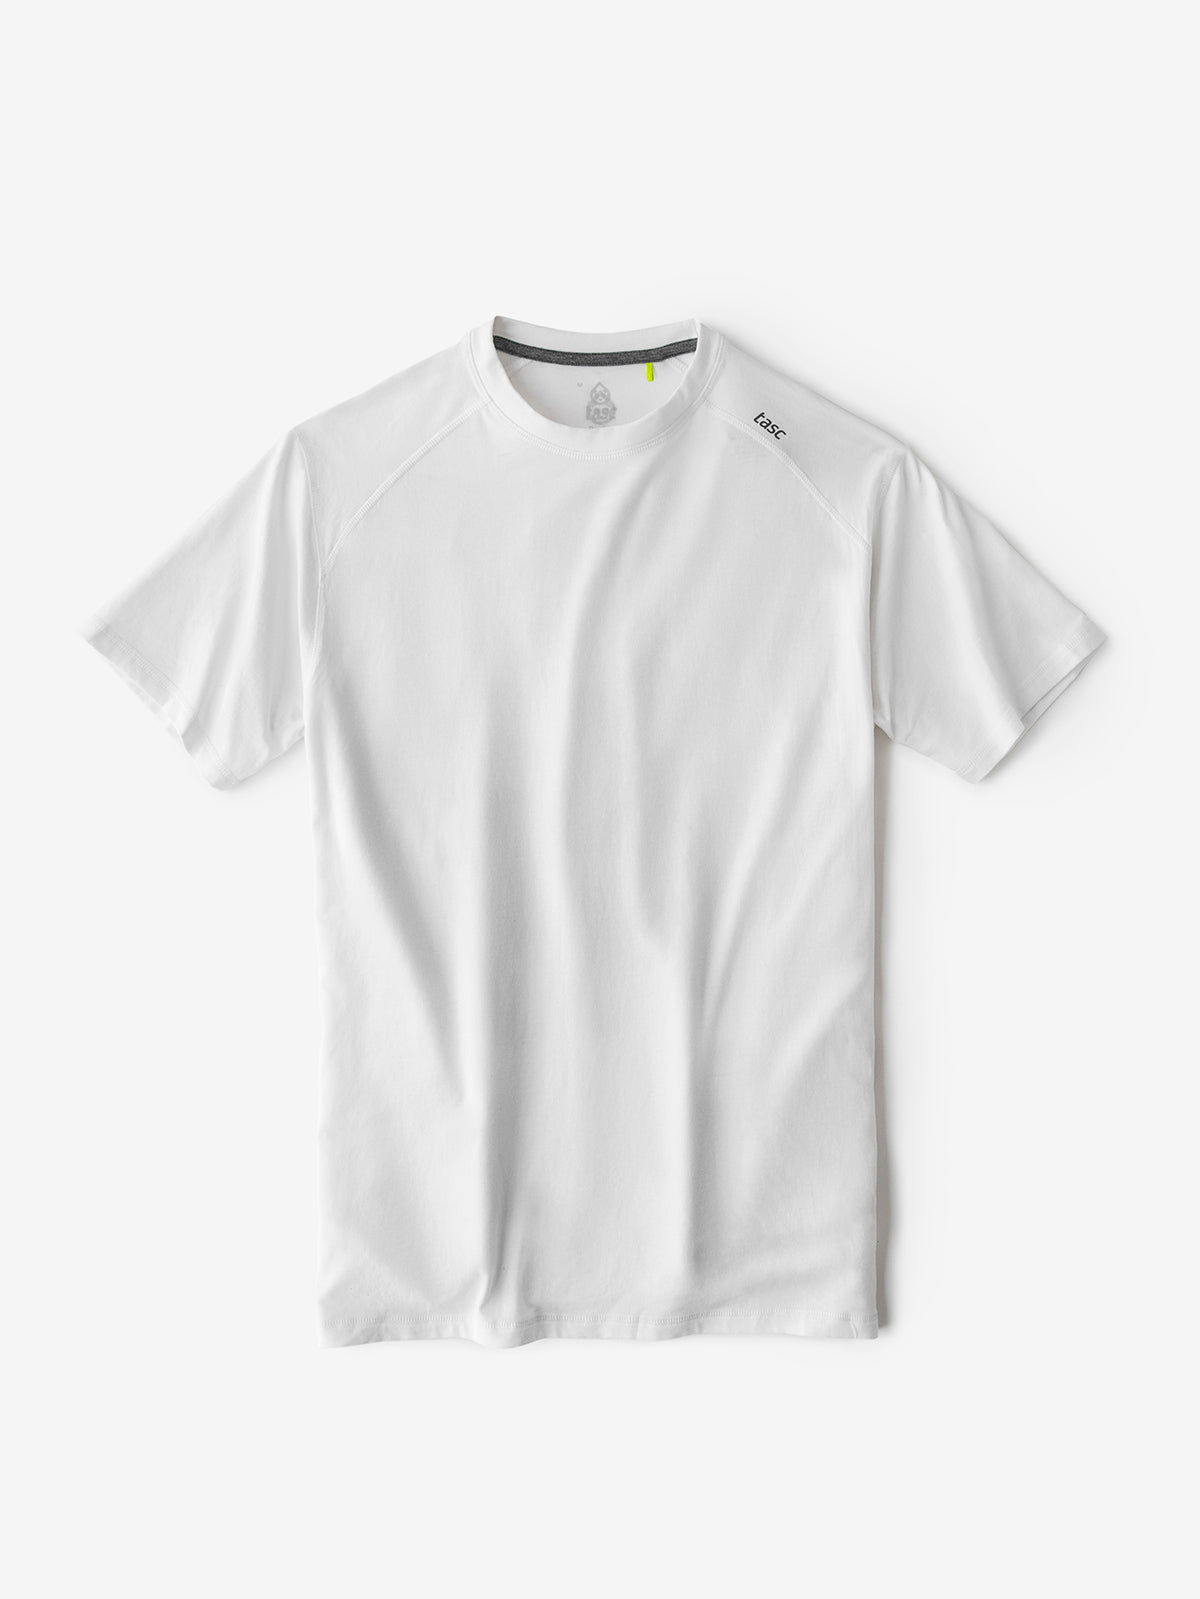 Tasc Men's Carrollton Fitness T-Shirt Apparel Tasc White-100 Small 